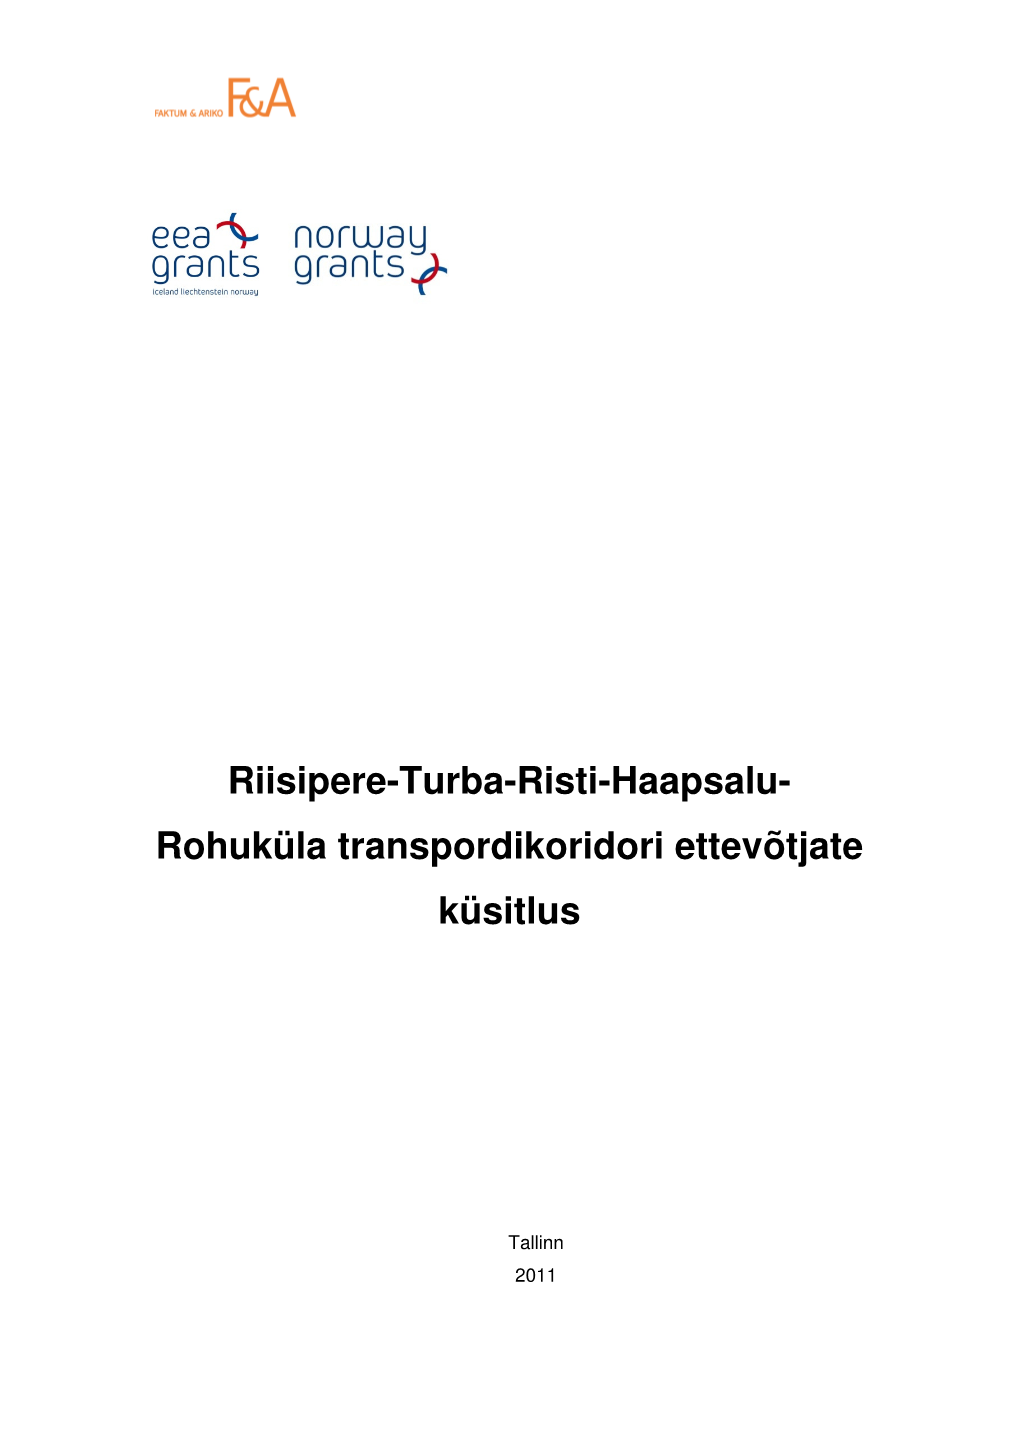 Riisipere-Turba-Risti-Haapsalu- Rohuküla Transpordikoridori Ettevõtjate Küsitlus